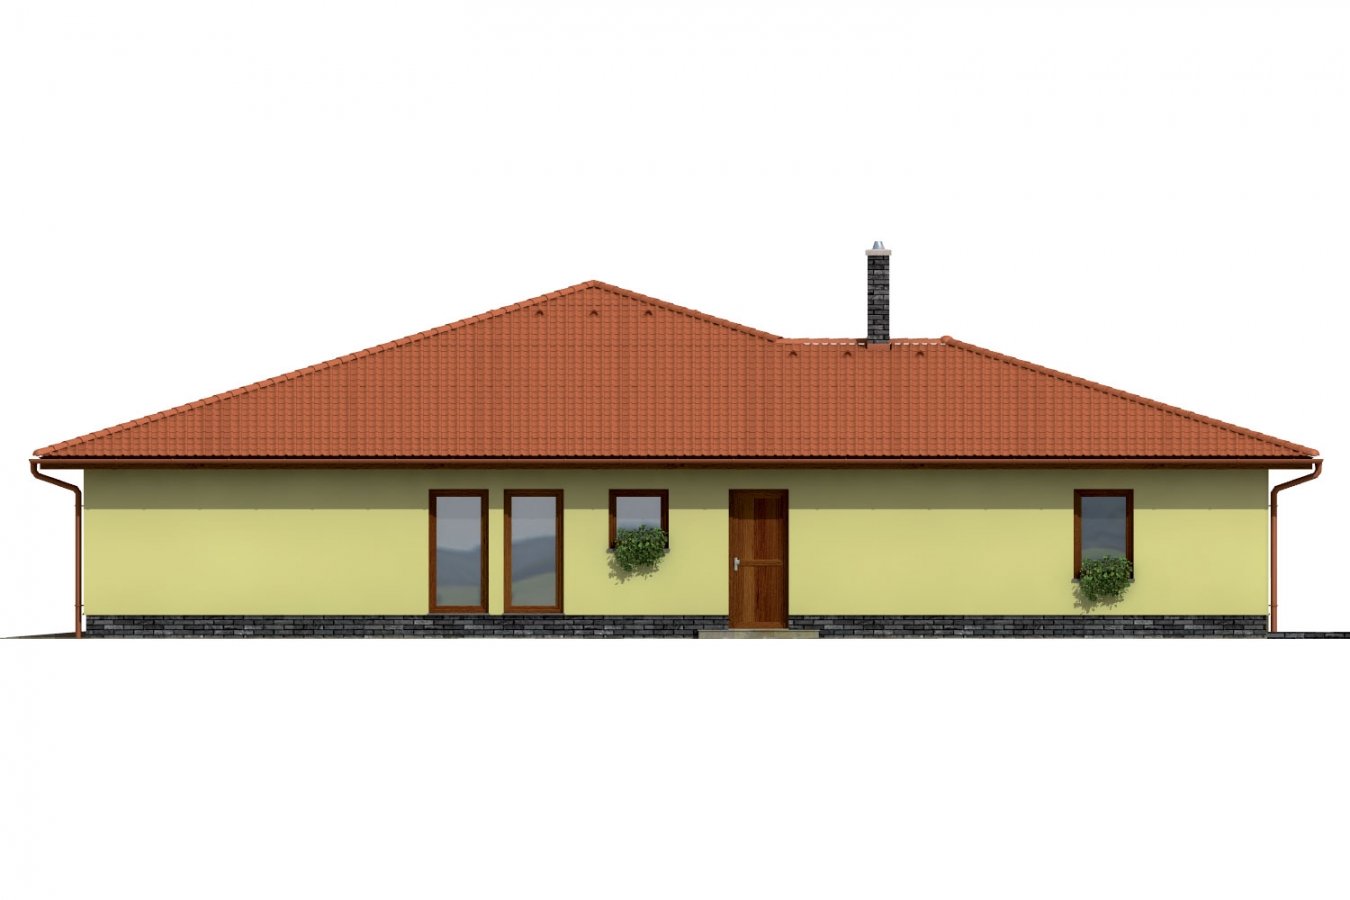 Zrkadlový pohľad 1. - Exkluzivní bungalov s dvěma garážemi.